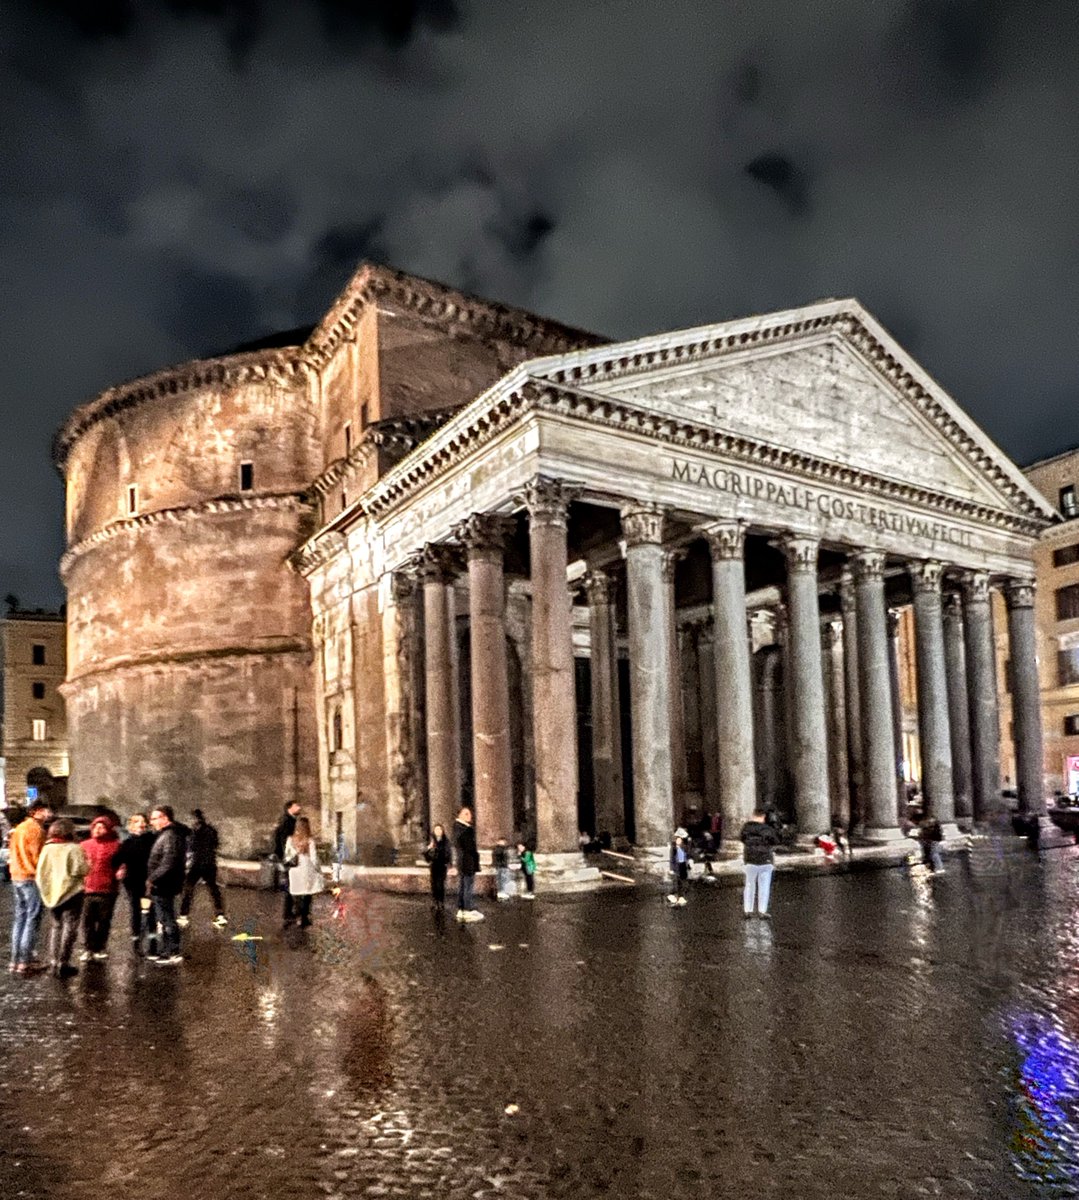 #Roma Pantheon
#buonaserata #goodnight